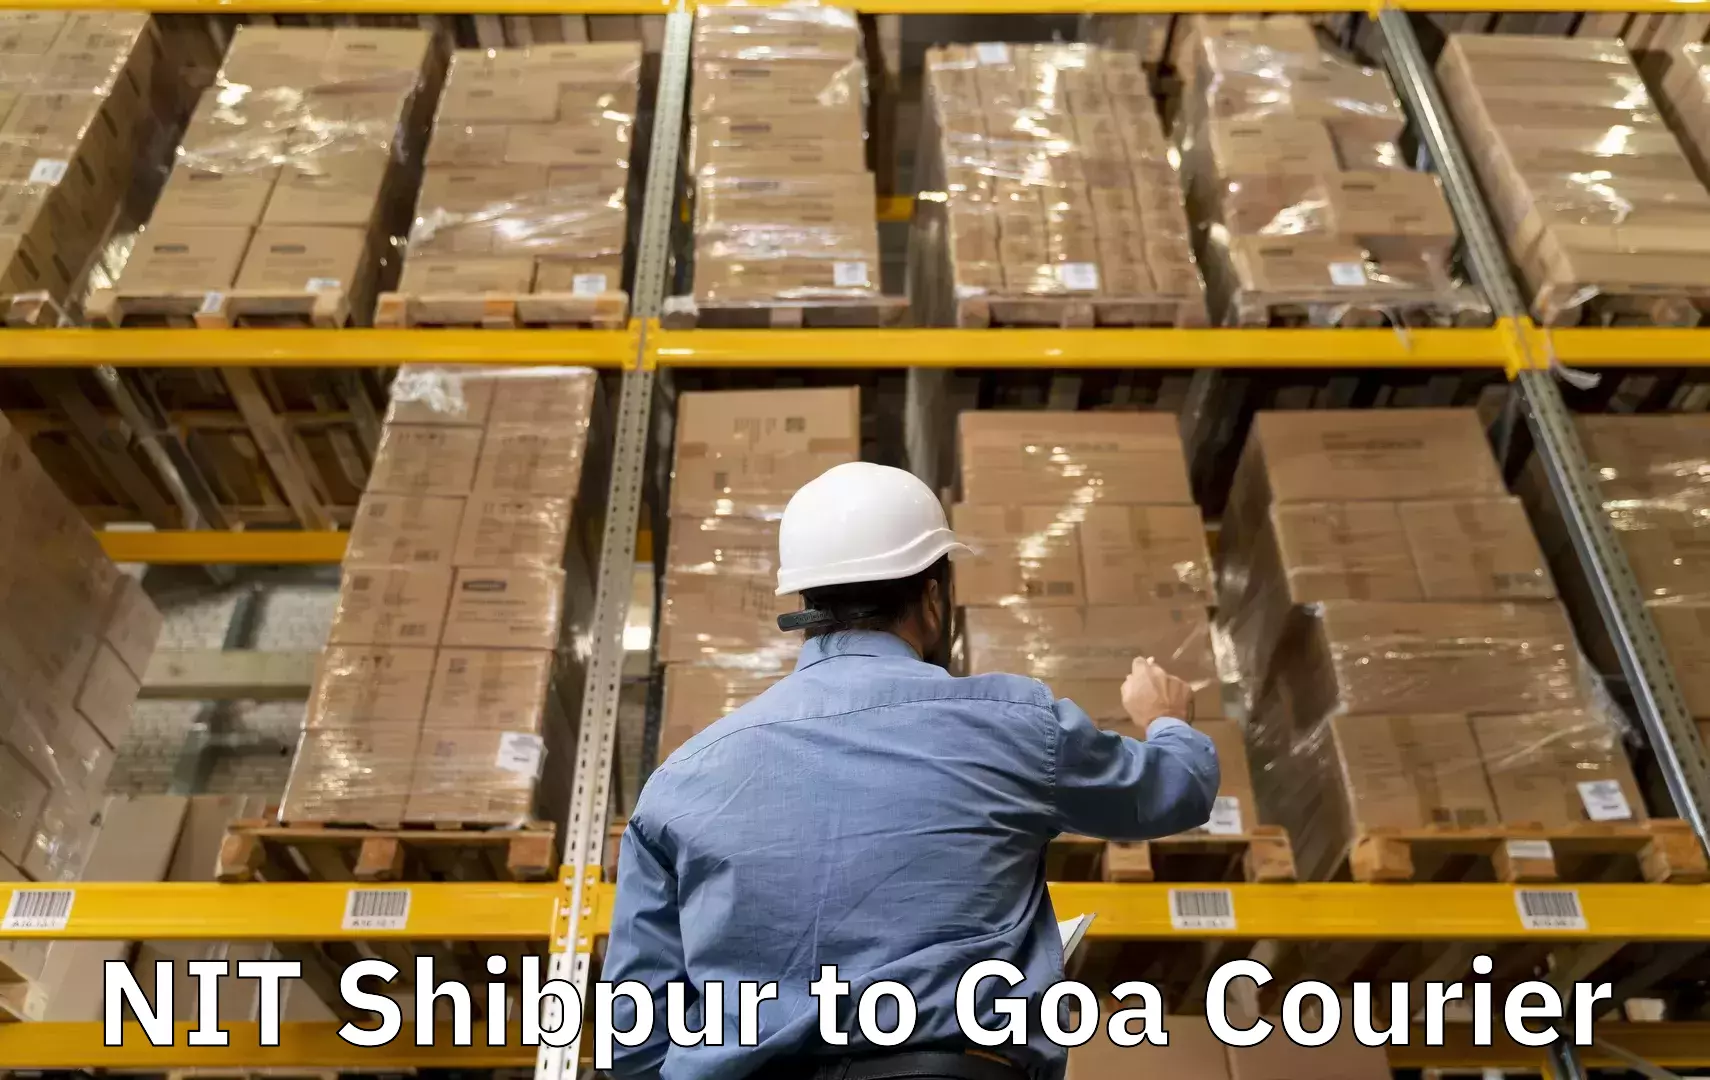 Baggage transport scheduler NIT Shibpur to Goa